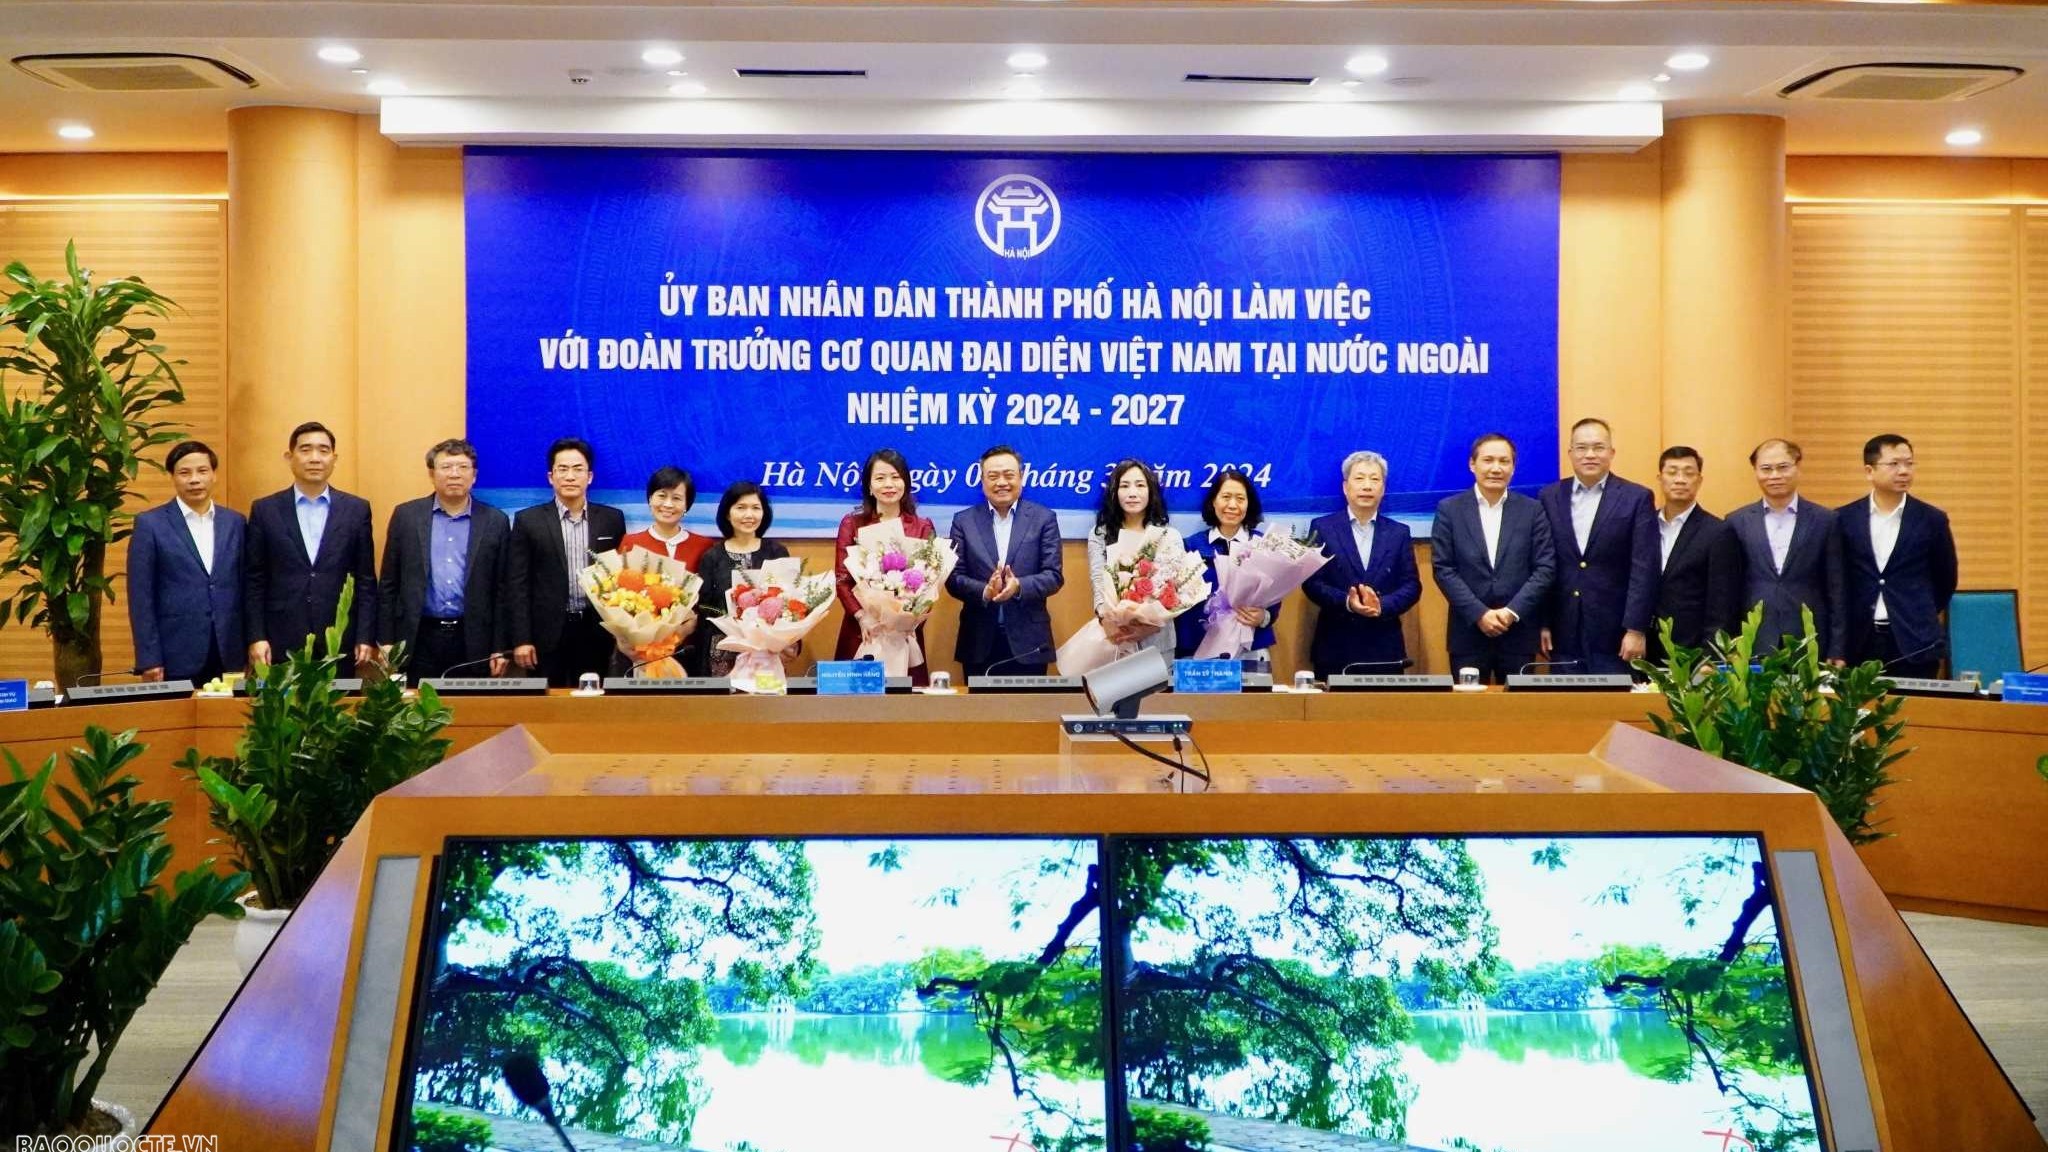 Trưởng Cơ quan đại diện Việt Nam ở nước ngoài - 'Sợi dây' kết nối Thủ đô Hà Nội với đối tác quốc tế